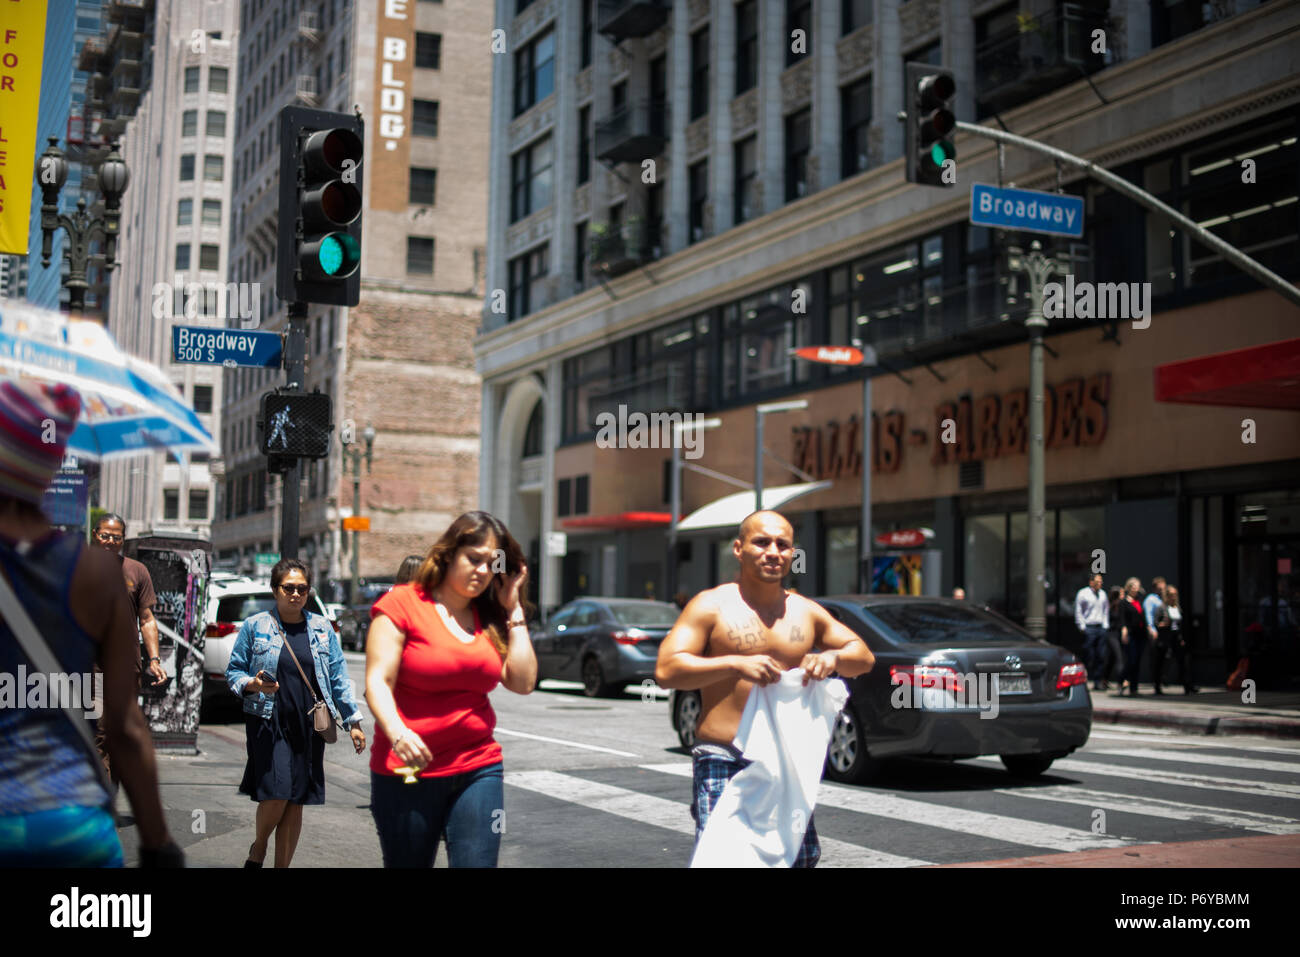 Los Angeles, USA - 29. Juni: Nicht identifizierte zufällige Menschen in den Straßen der Innenstadt von Los Angeles, CA am 29. Juni 2018. Stockfoto